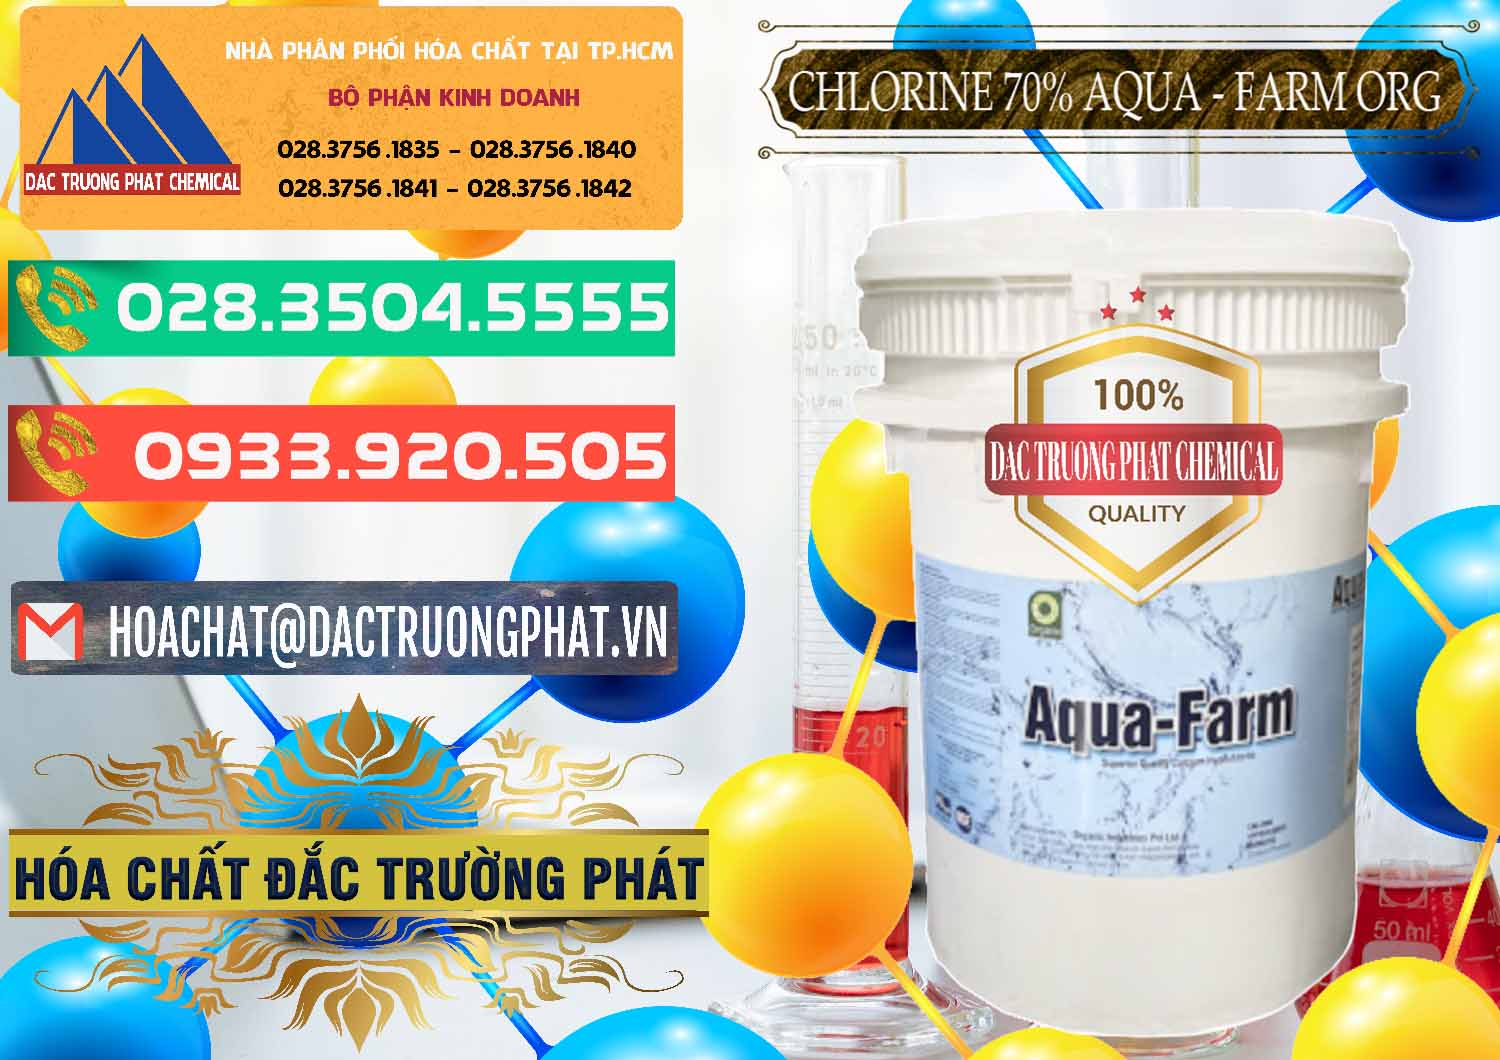 Công ty chuyên cung cấp _ bán Chlorine – Clorin 70% Aqua - Farm ORG Organic Ấn Độ India - 0246 - Công ty phân phối - bán hóa chất tại TP.HCM - congtyhoachat.com.vn